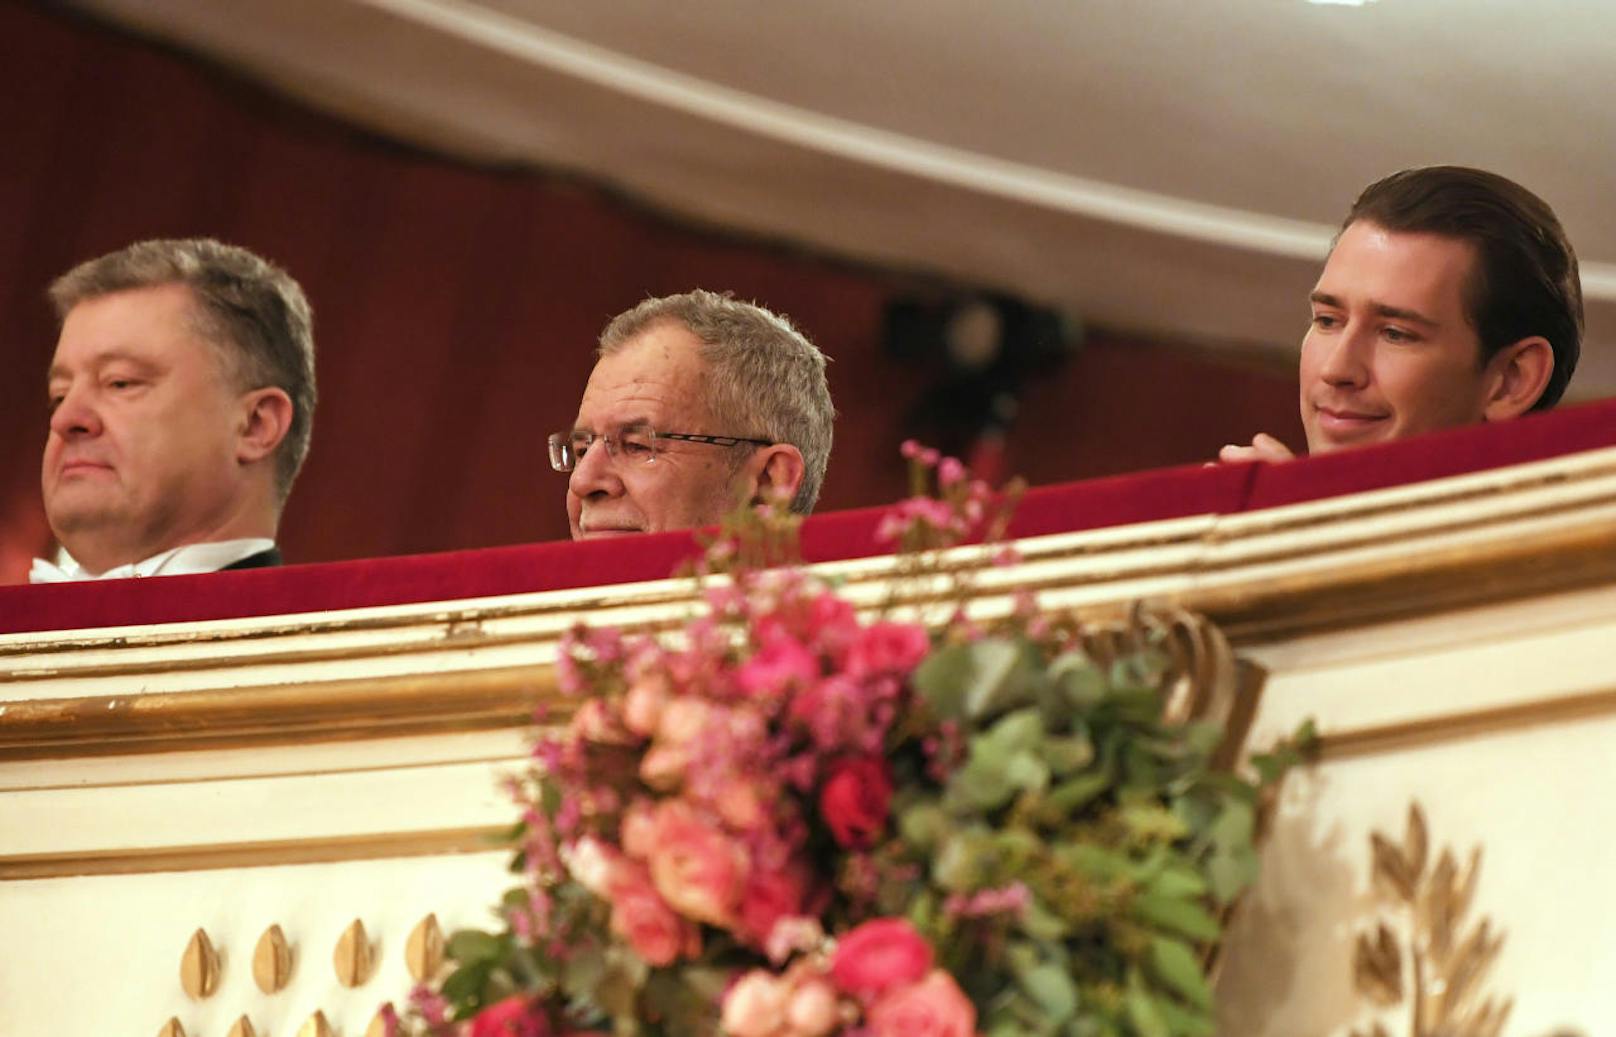 Der ukrainische Präsident Petro Poroschenko, Bundespräsident Alexander Van der Bellen und Bundeskanzler Sebastian Kurz in ihrer Loge.